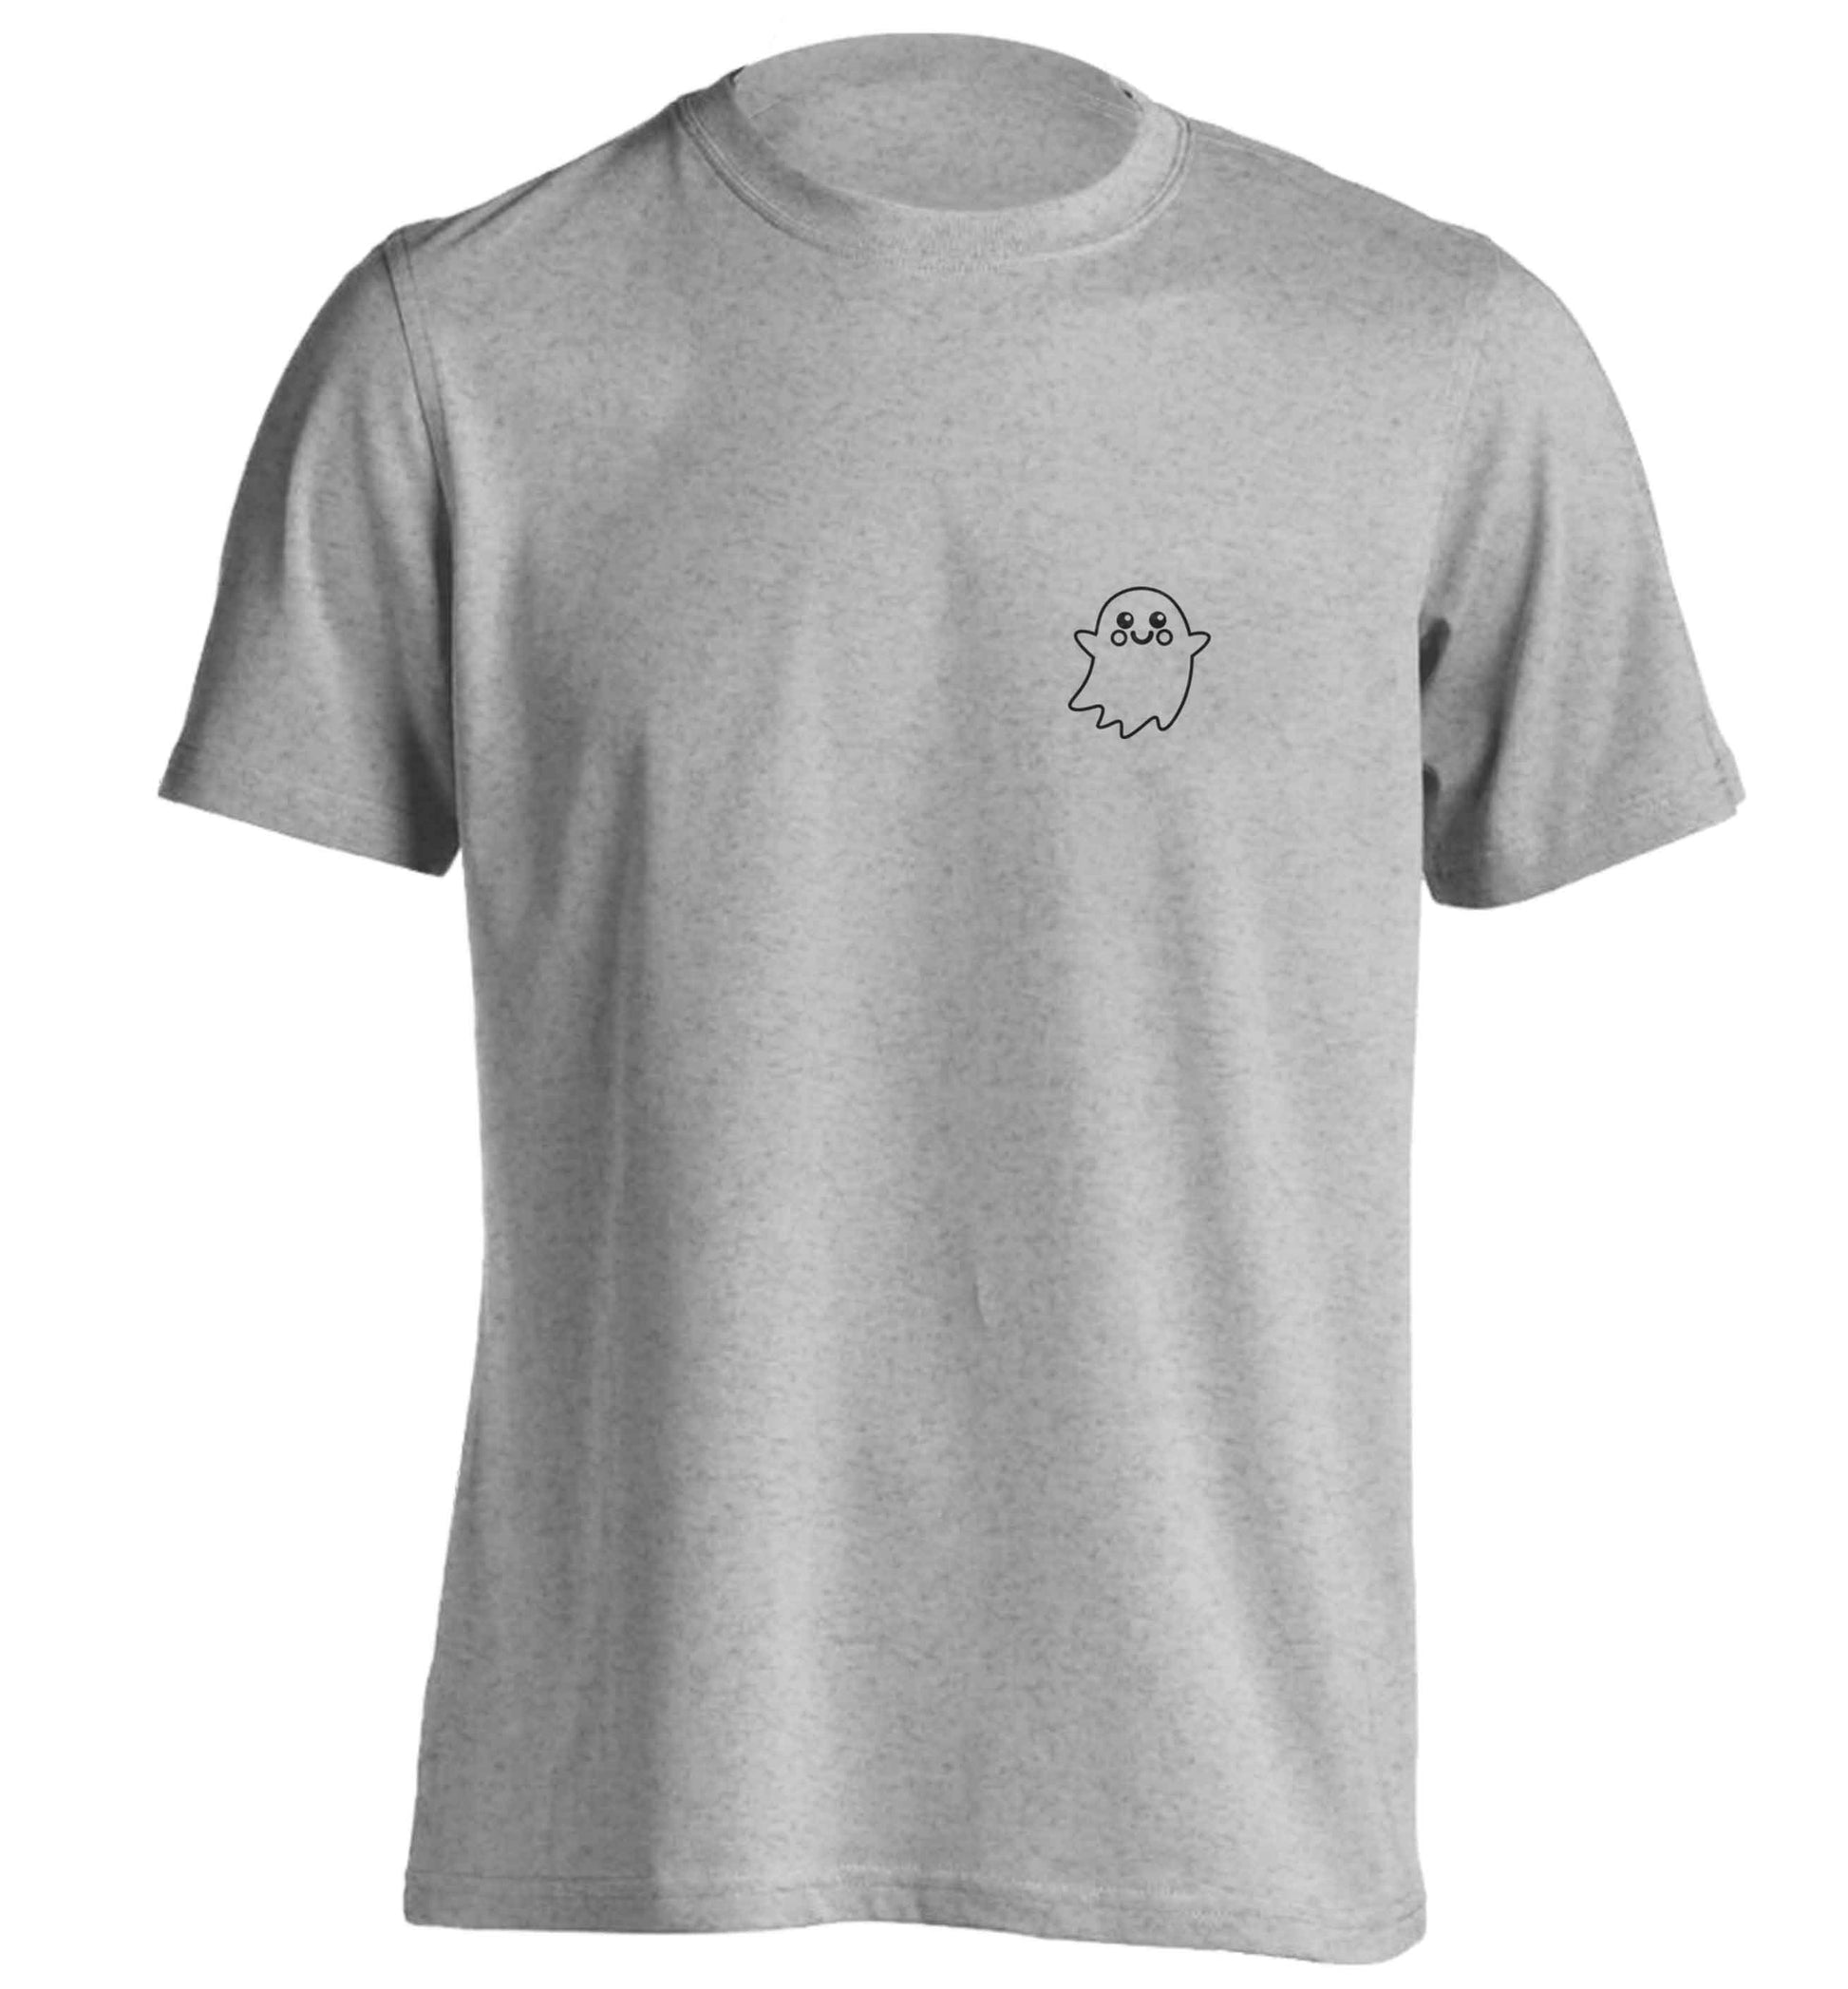 Pocket ghost adults unisex grey Tshirt 2XL